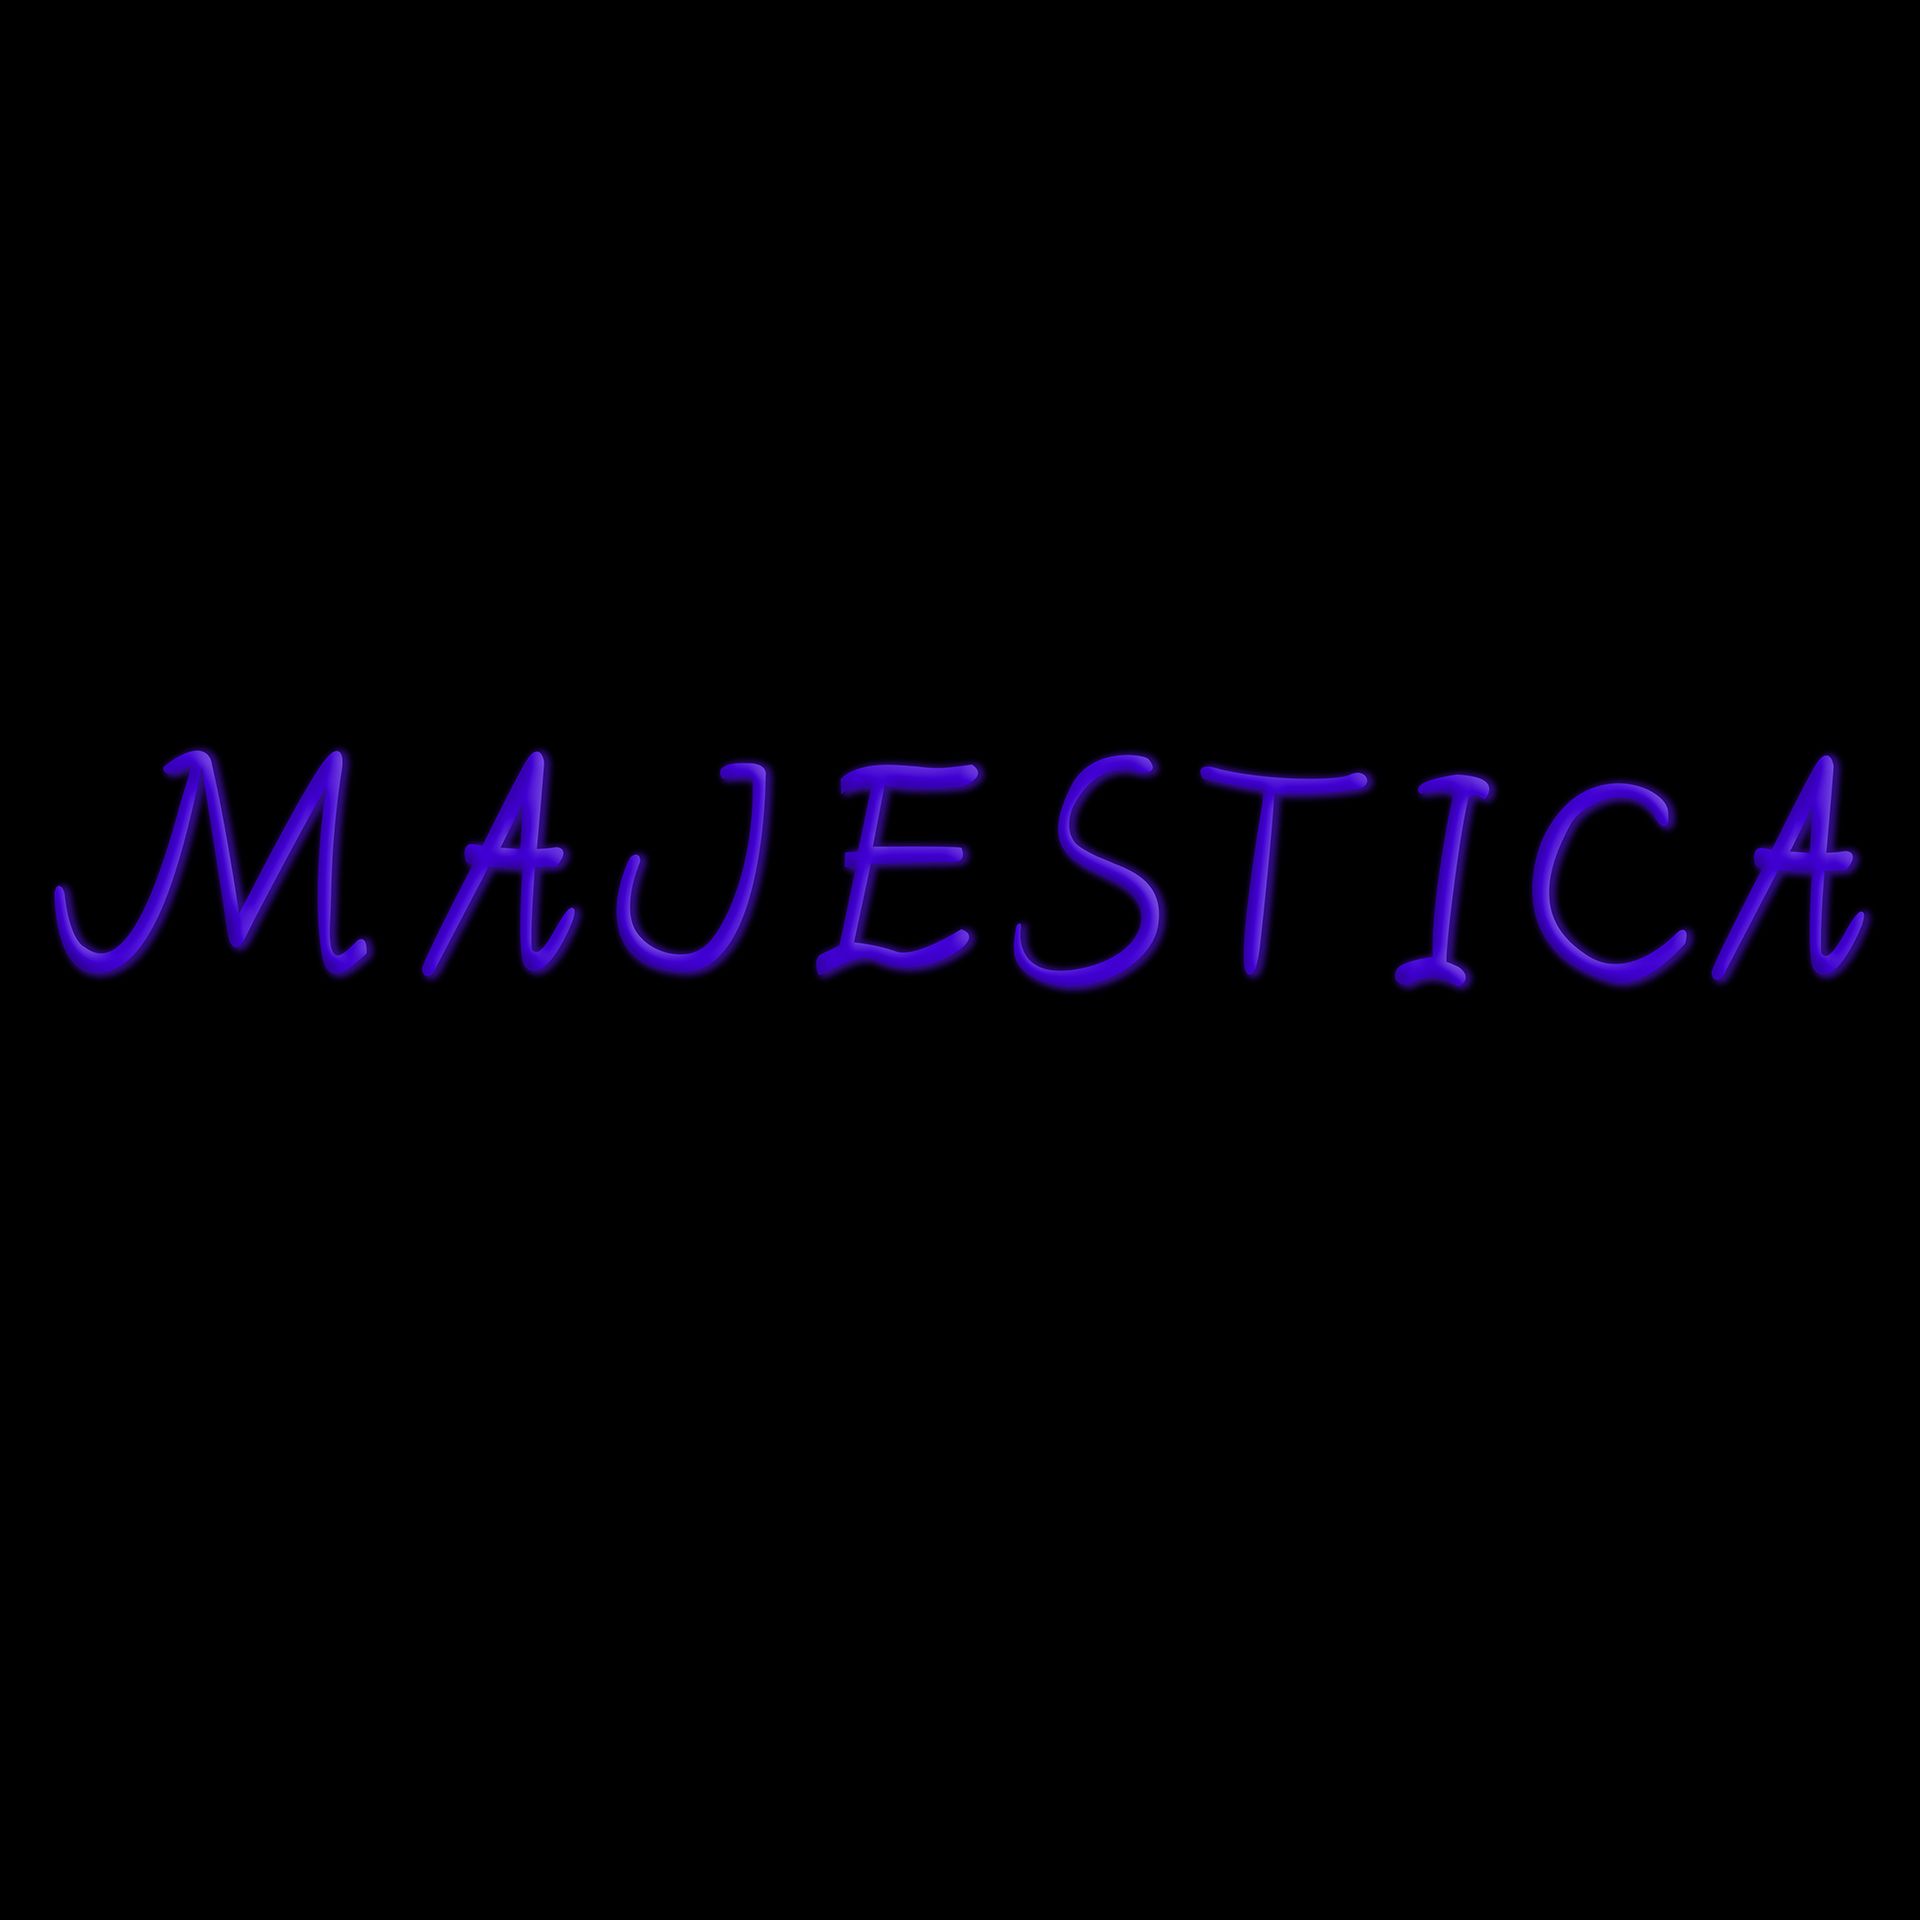 MajesticaTV Logo